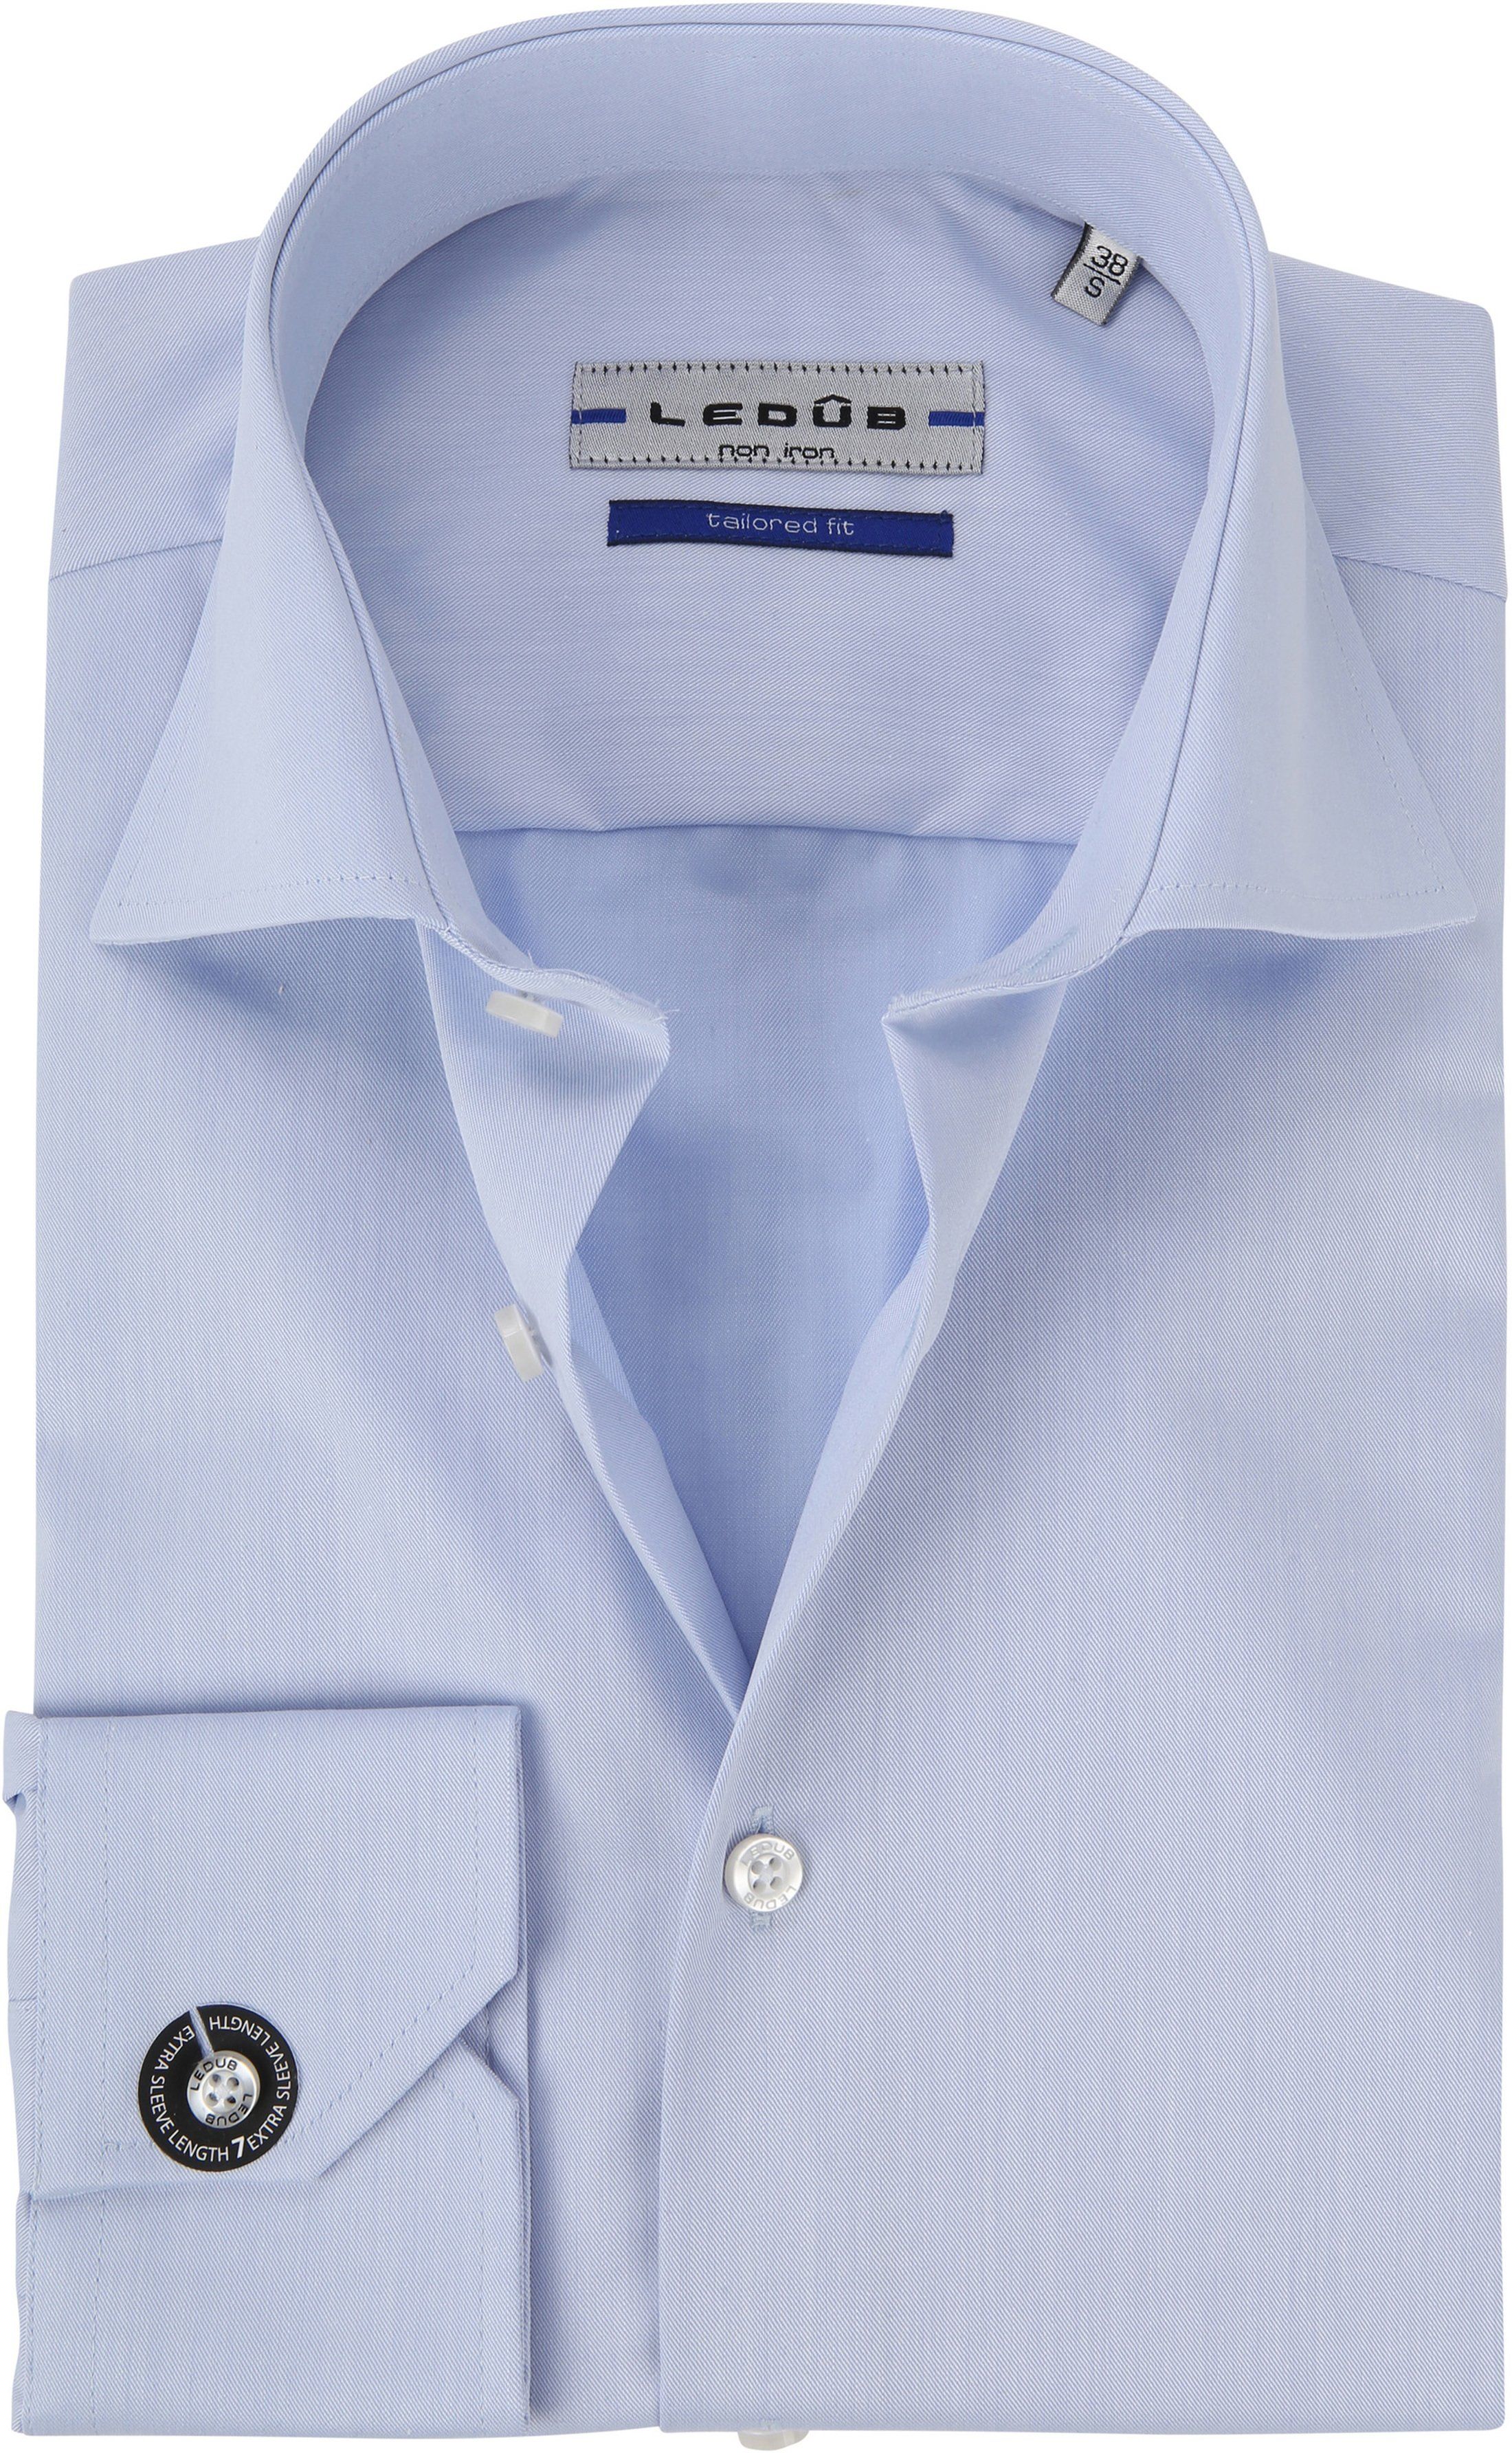 Ledub Non Iron Shirt Sleeve 7 Blue size 15